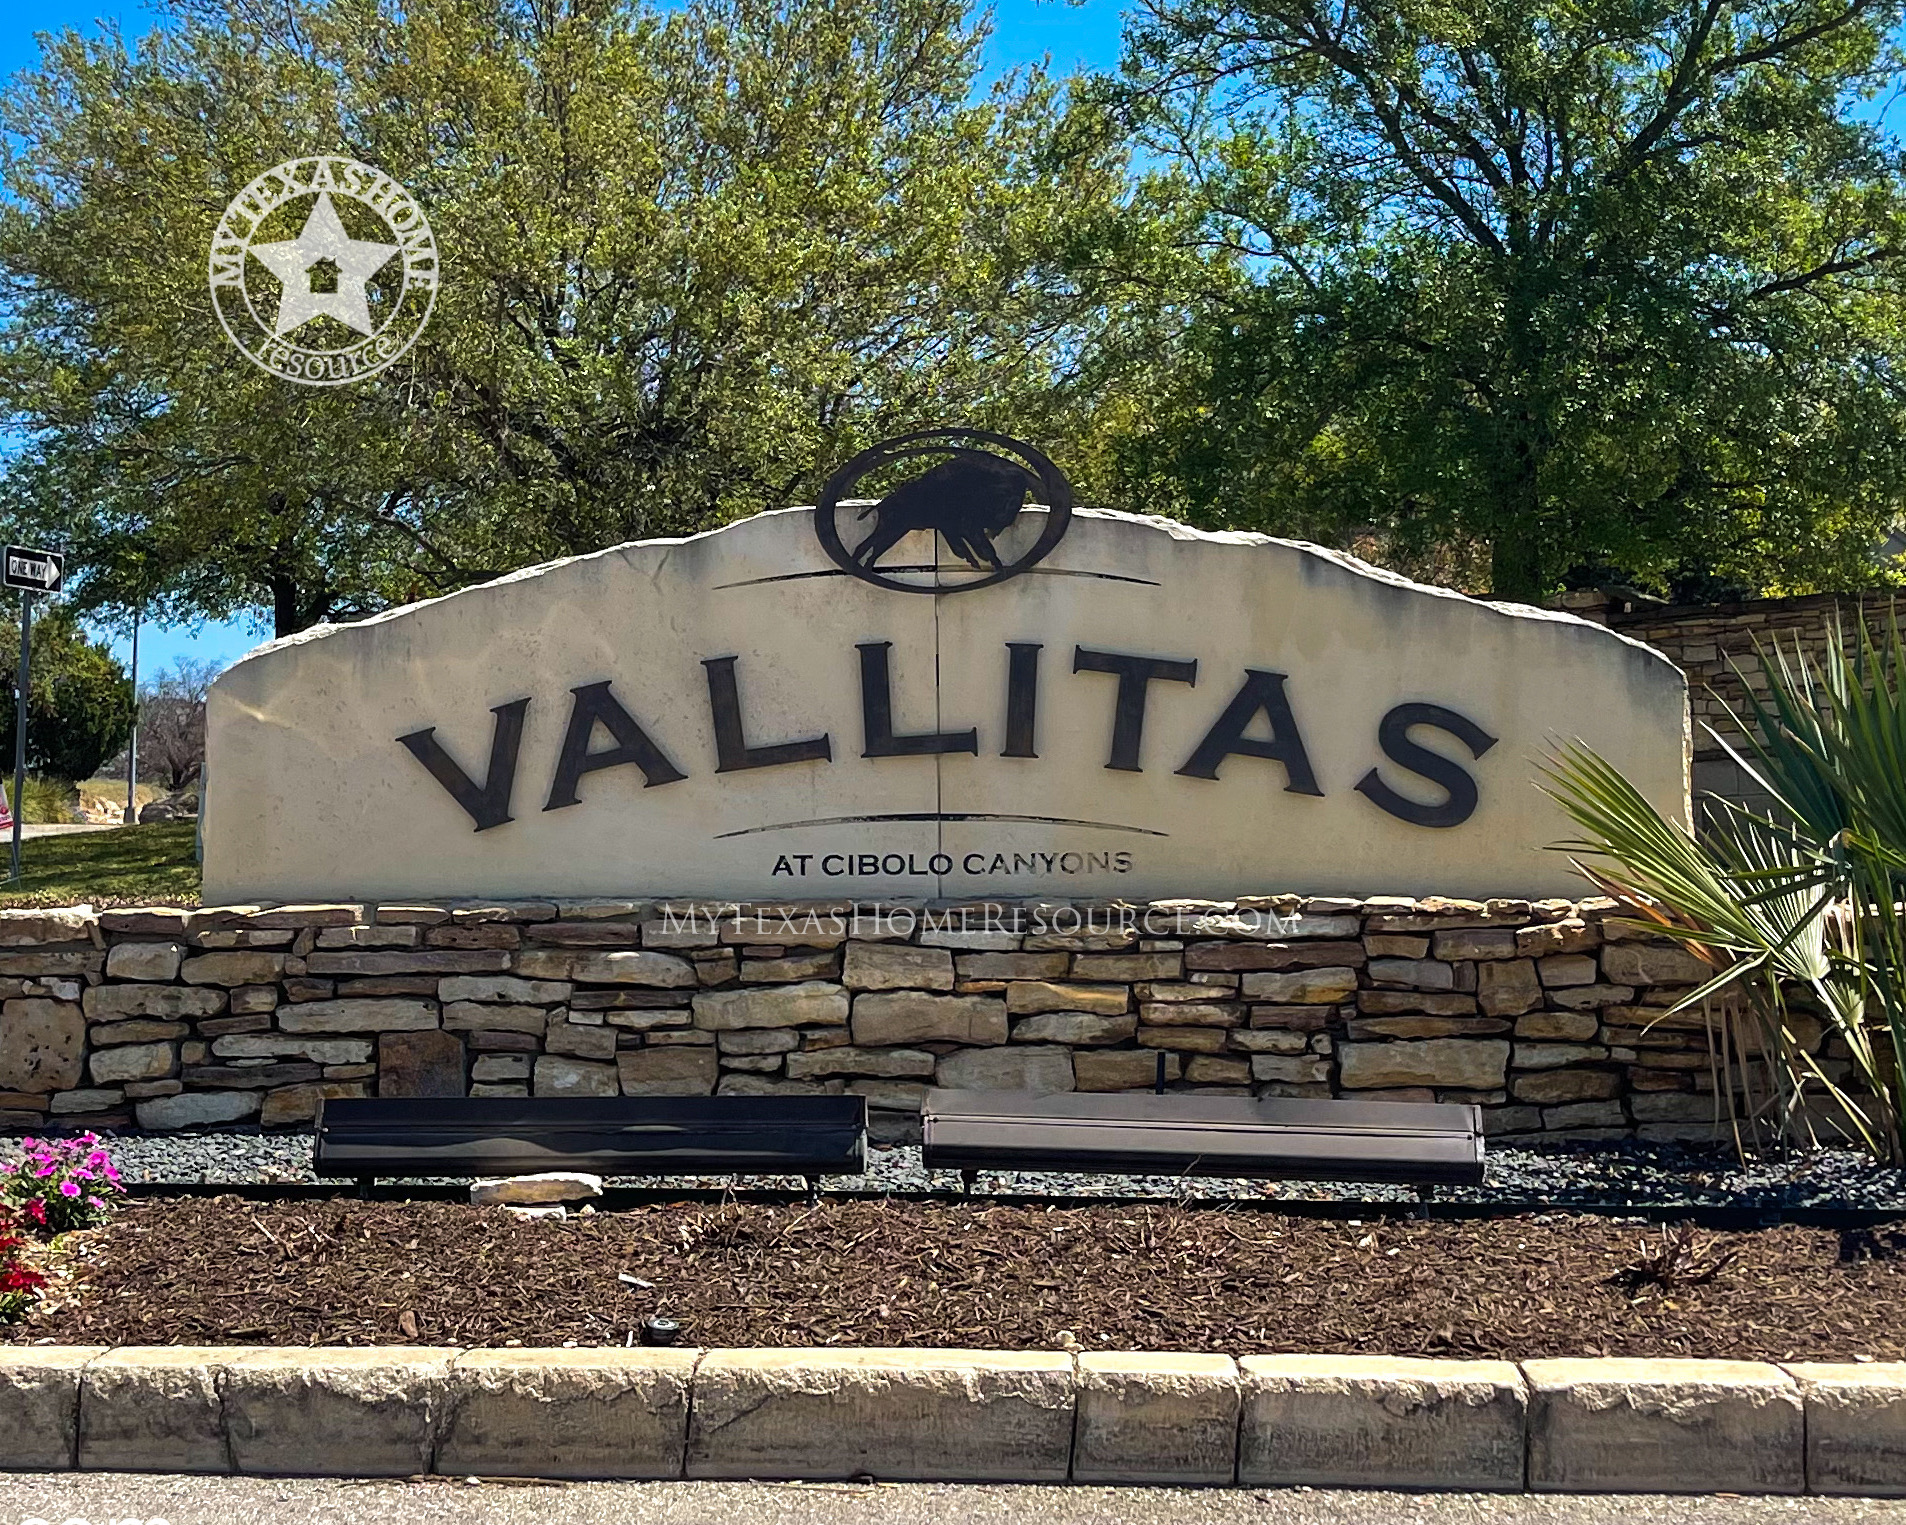 德克萨斯州网上正规的彩票网站男孩峡谷社区的Vallitas